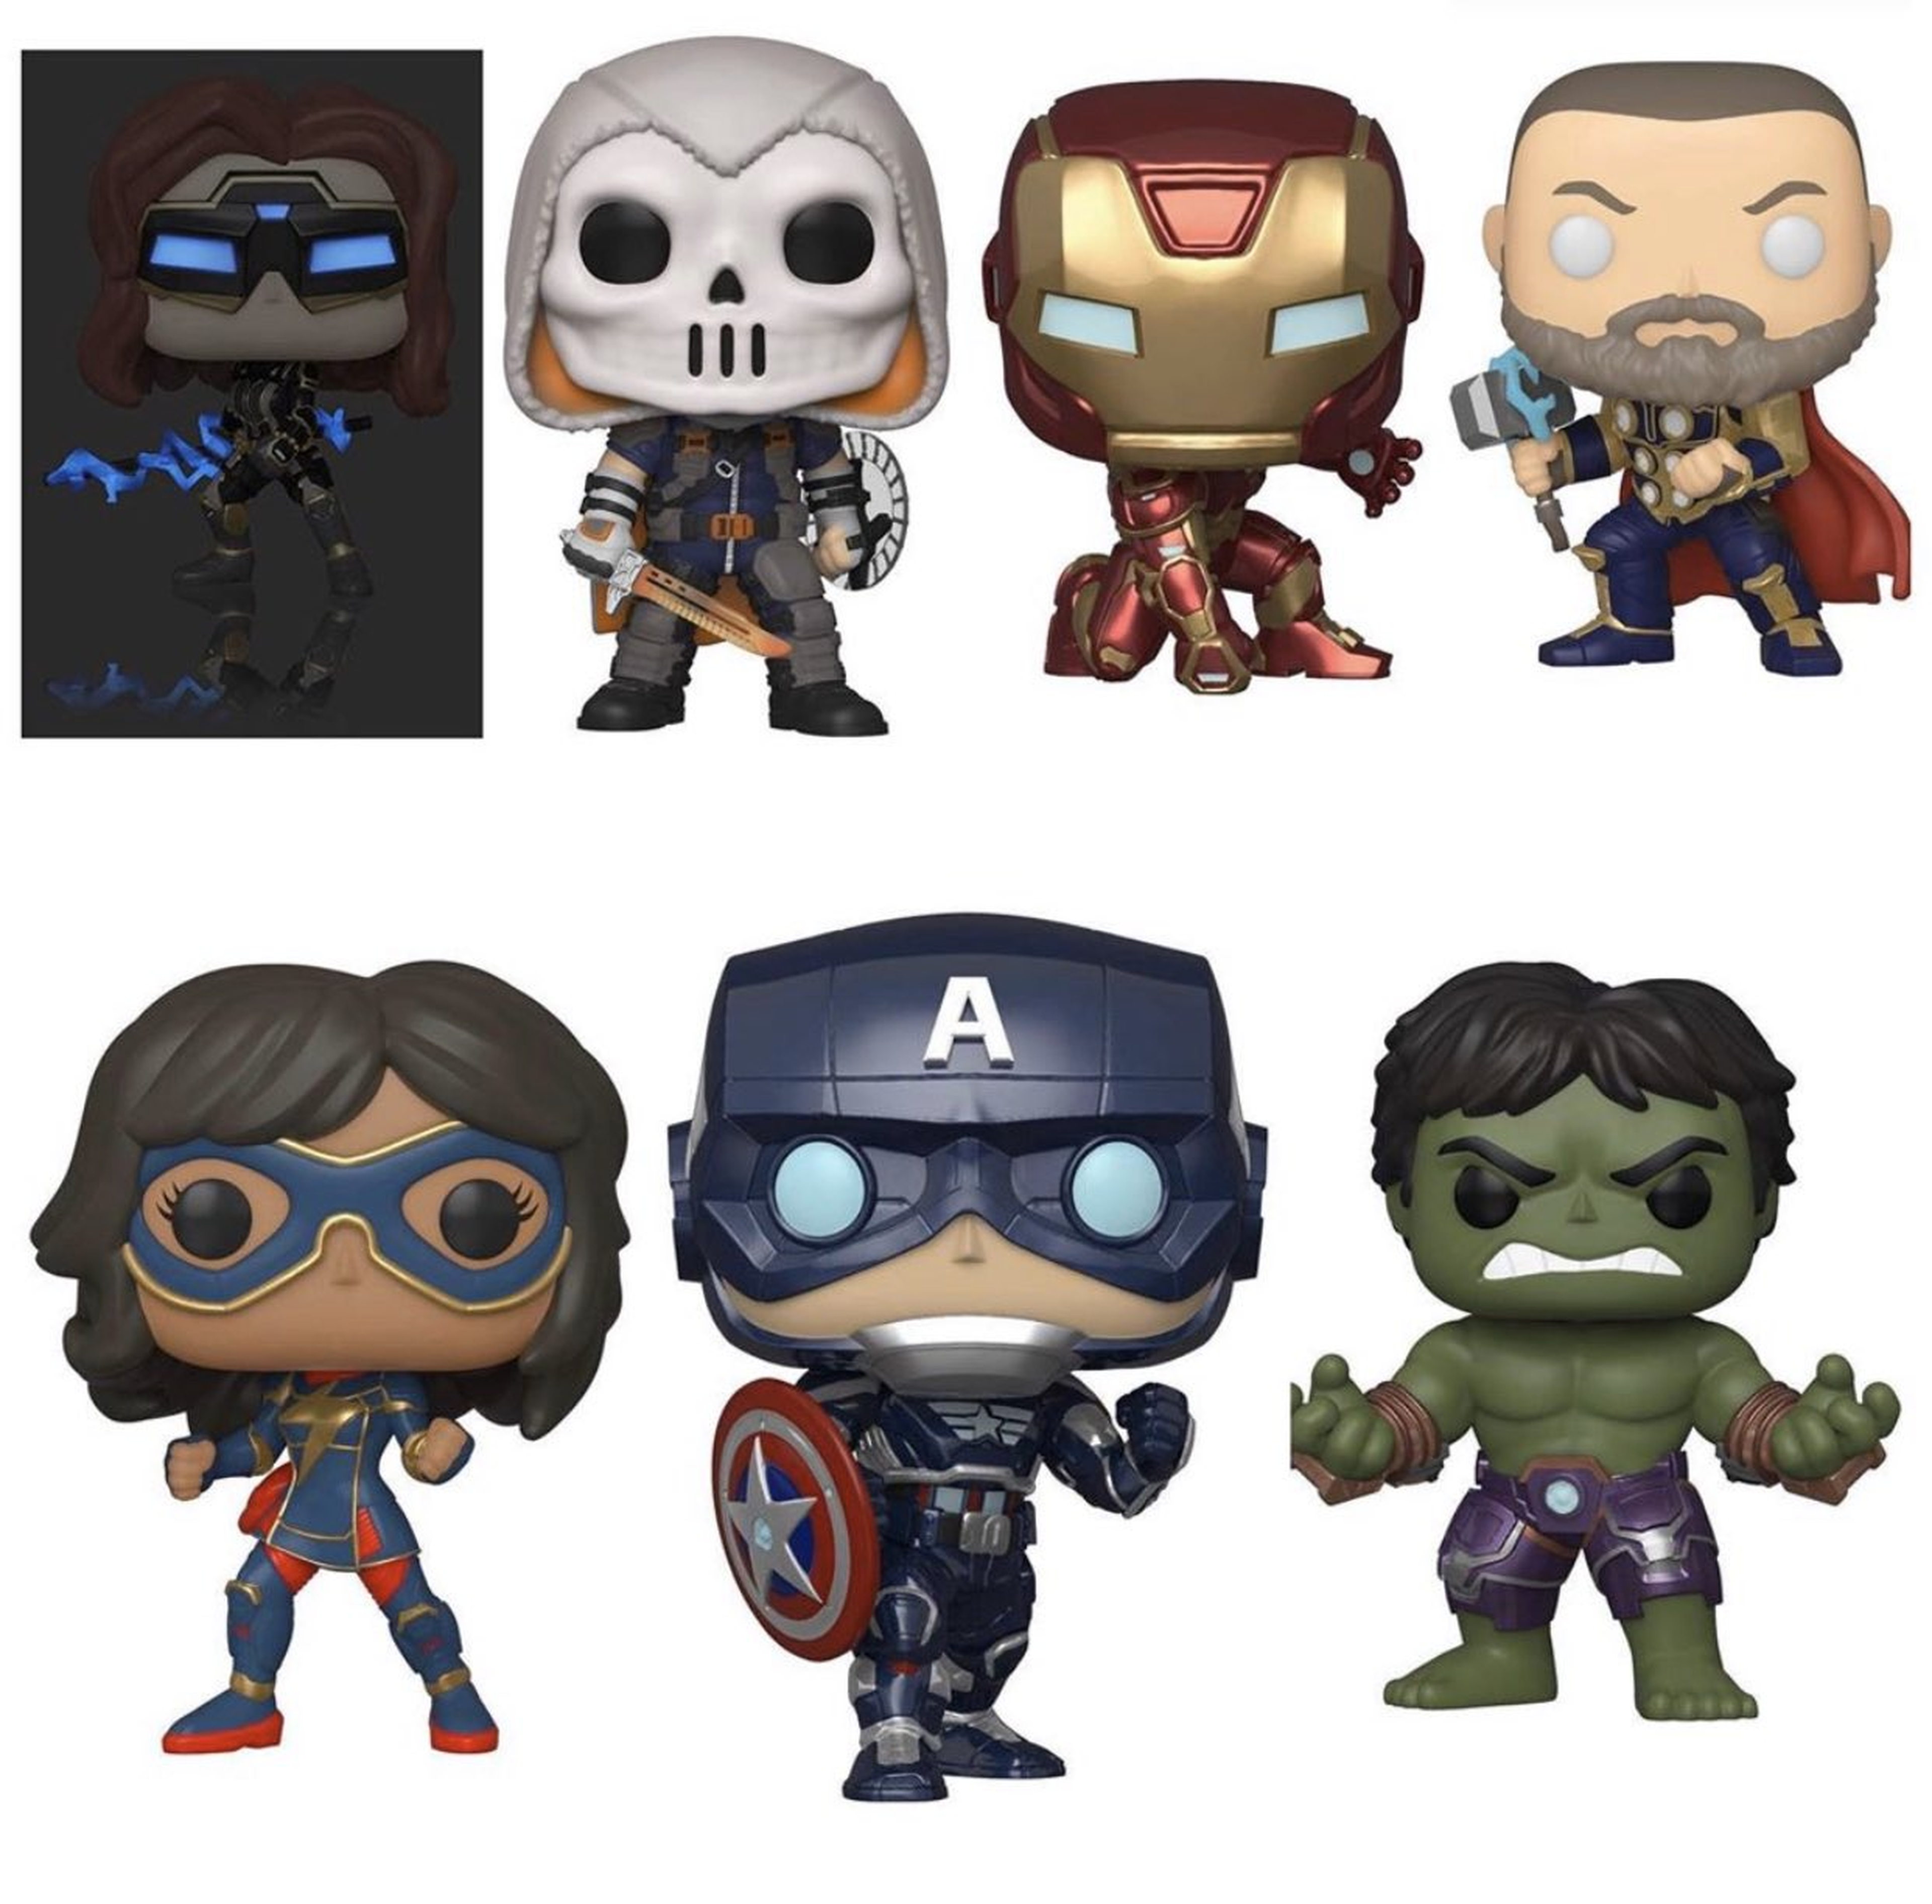 Marvel's Avengers Figuras